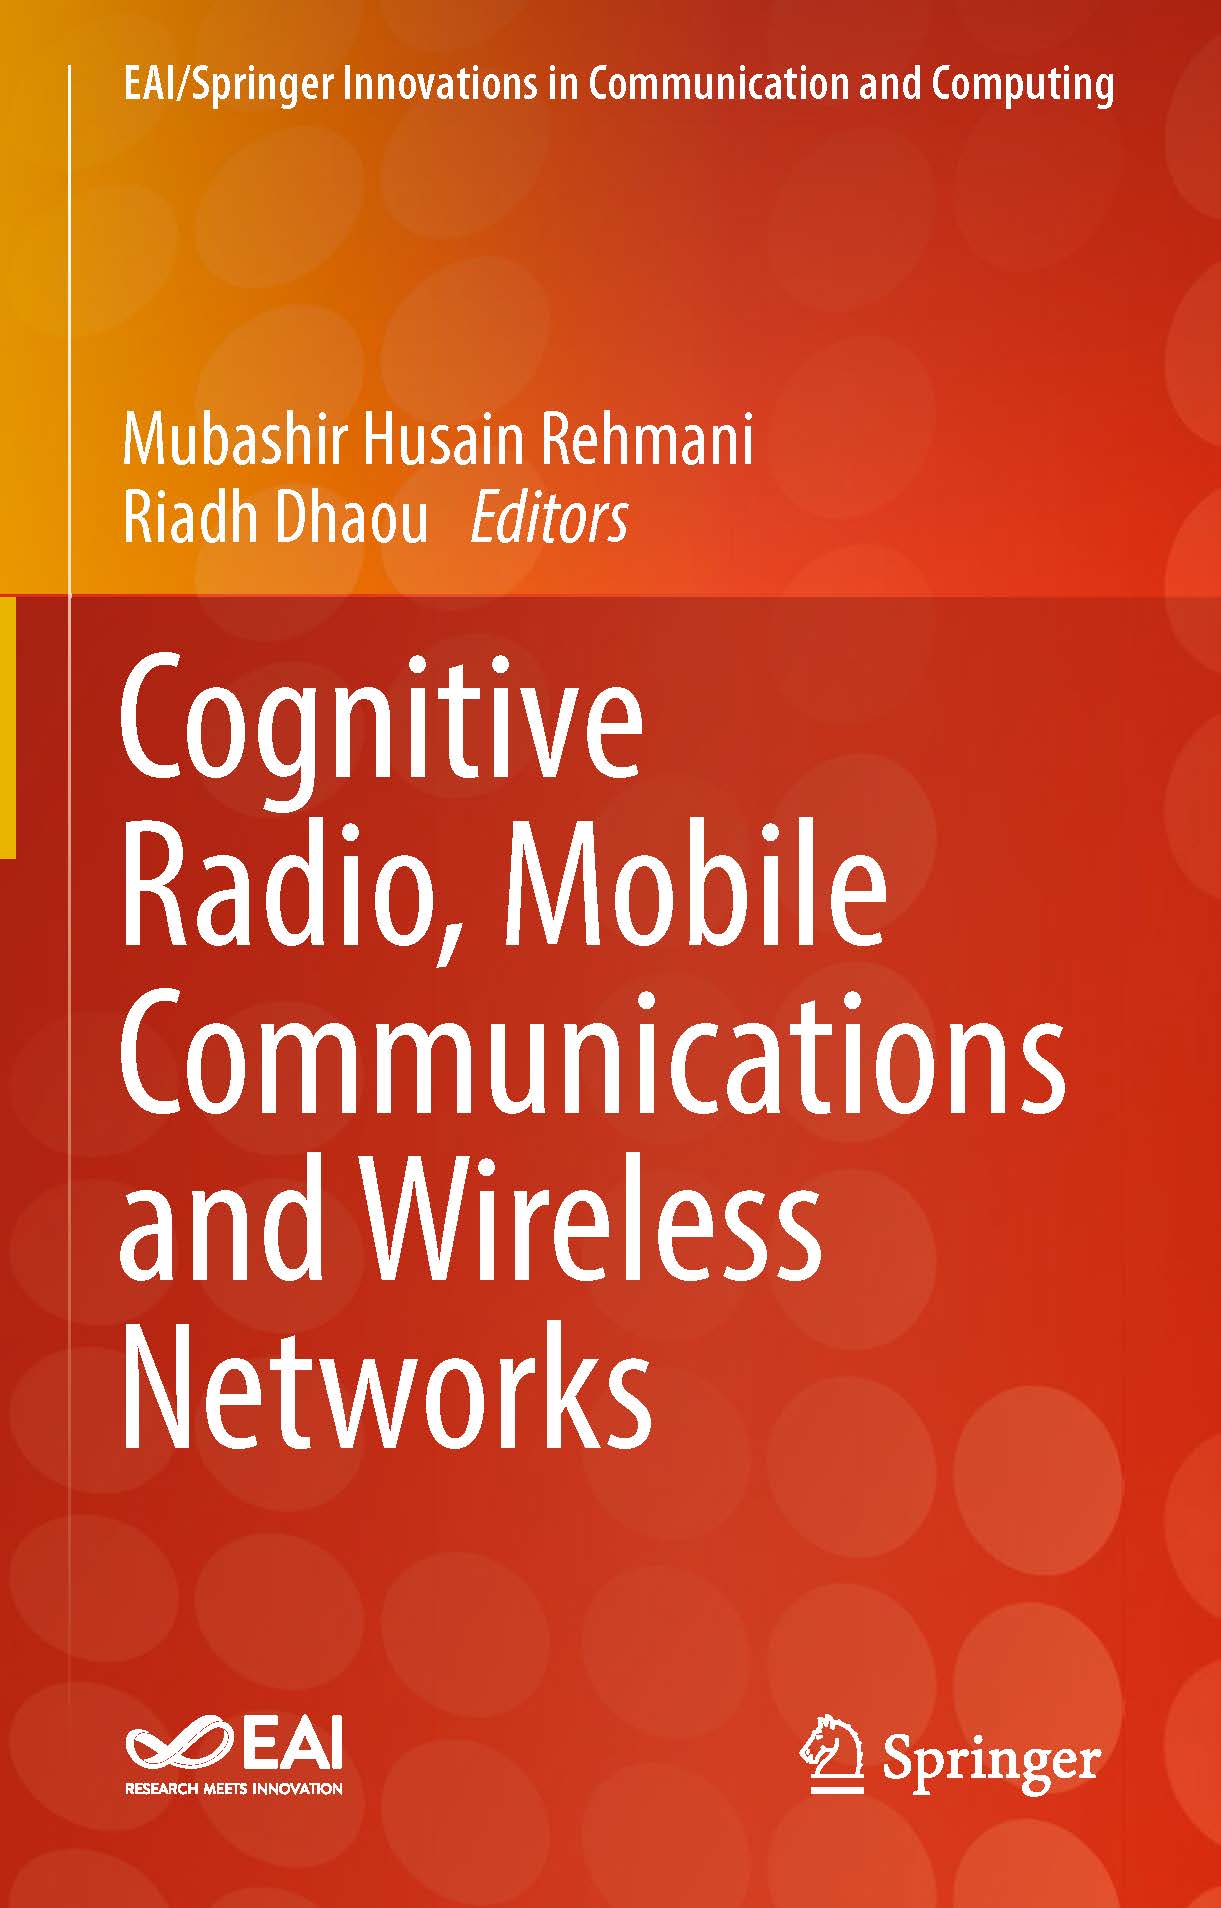 页面提取自－2019_Book_Cognitive Radio, Mobile Communications and Wireless Networks.jpg